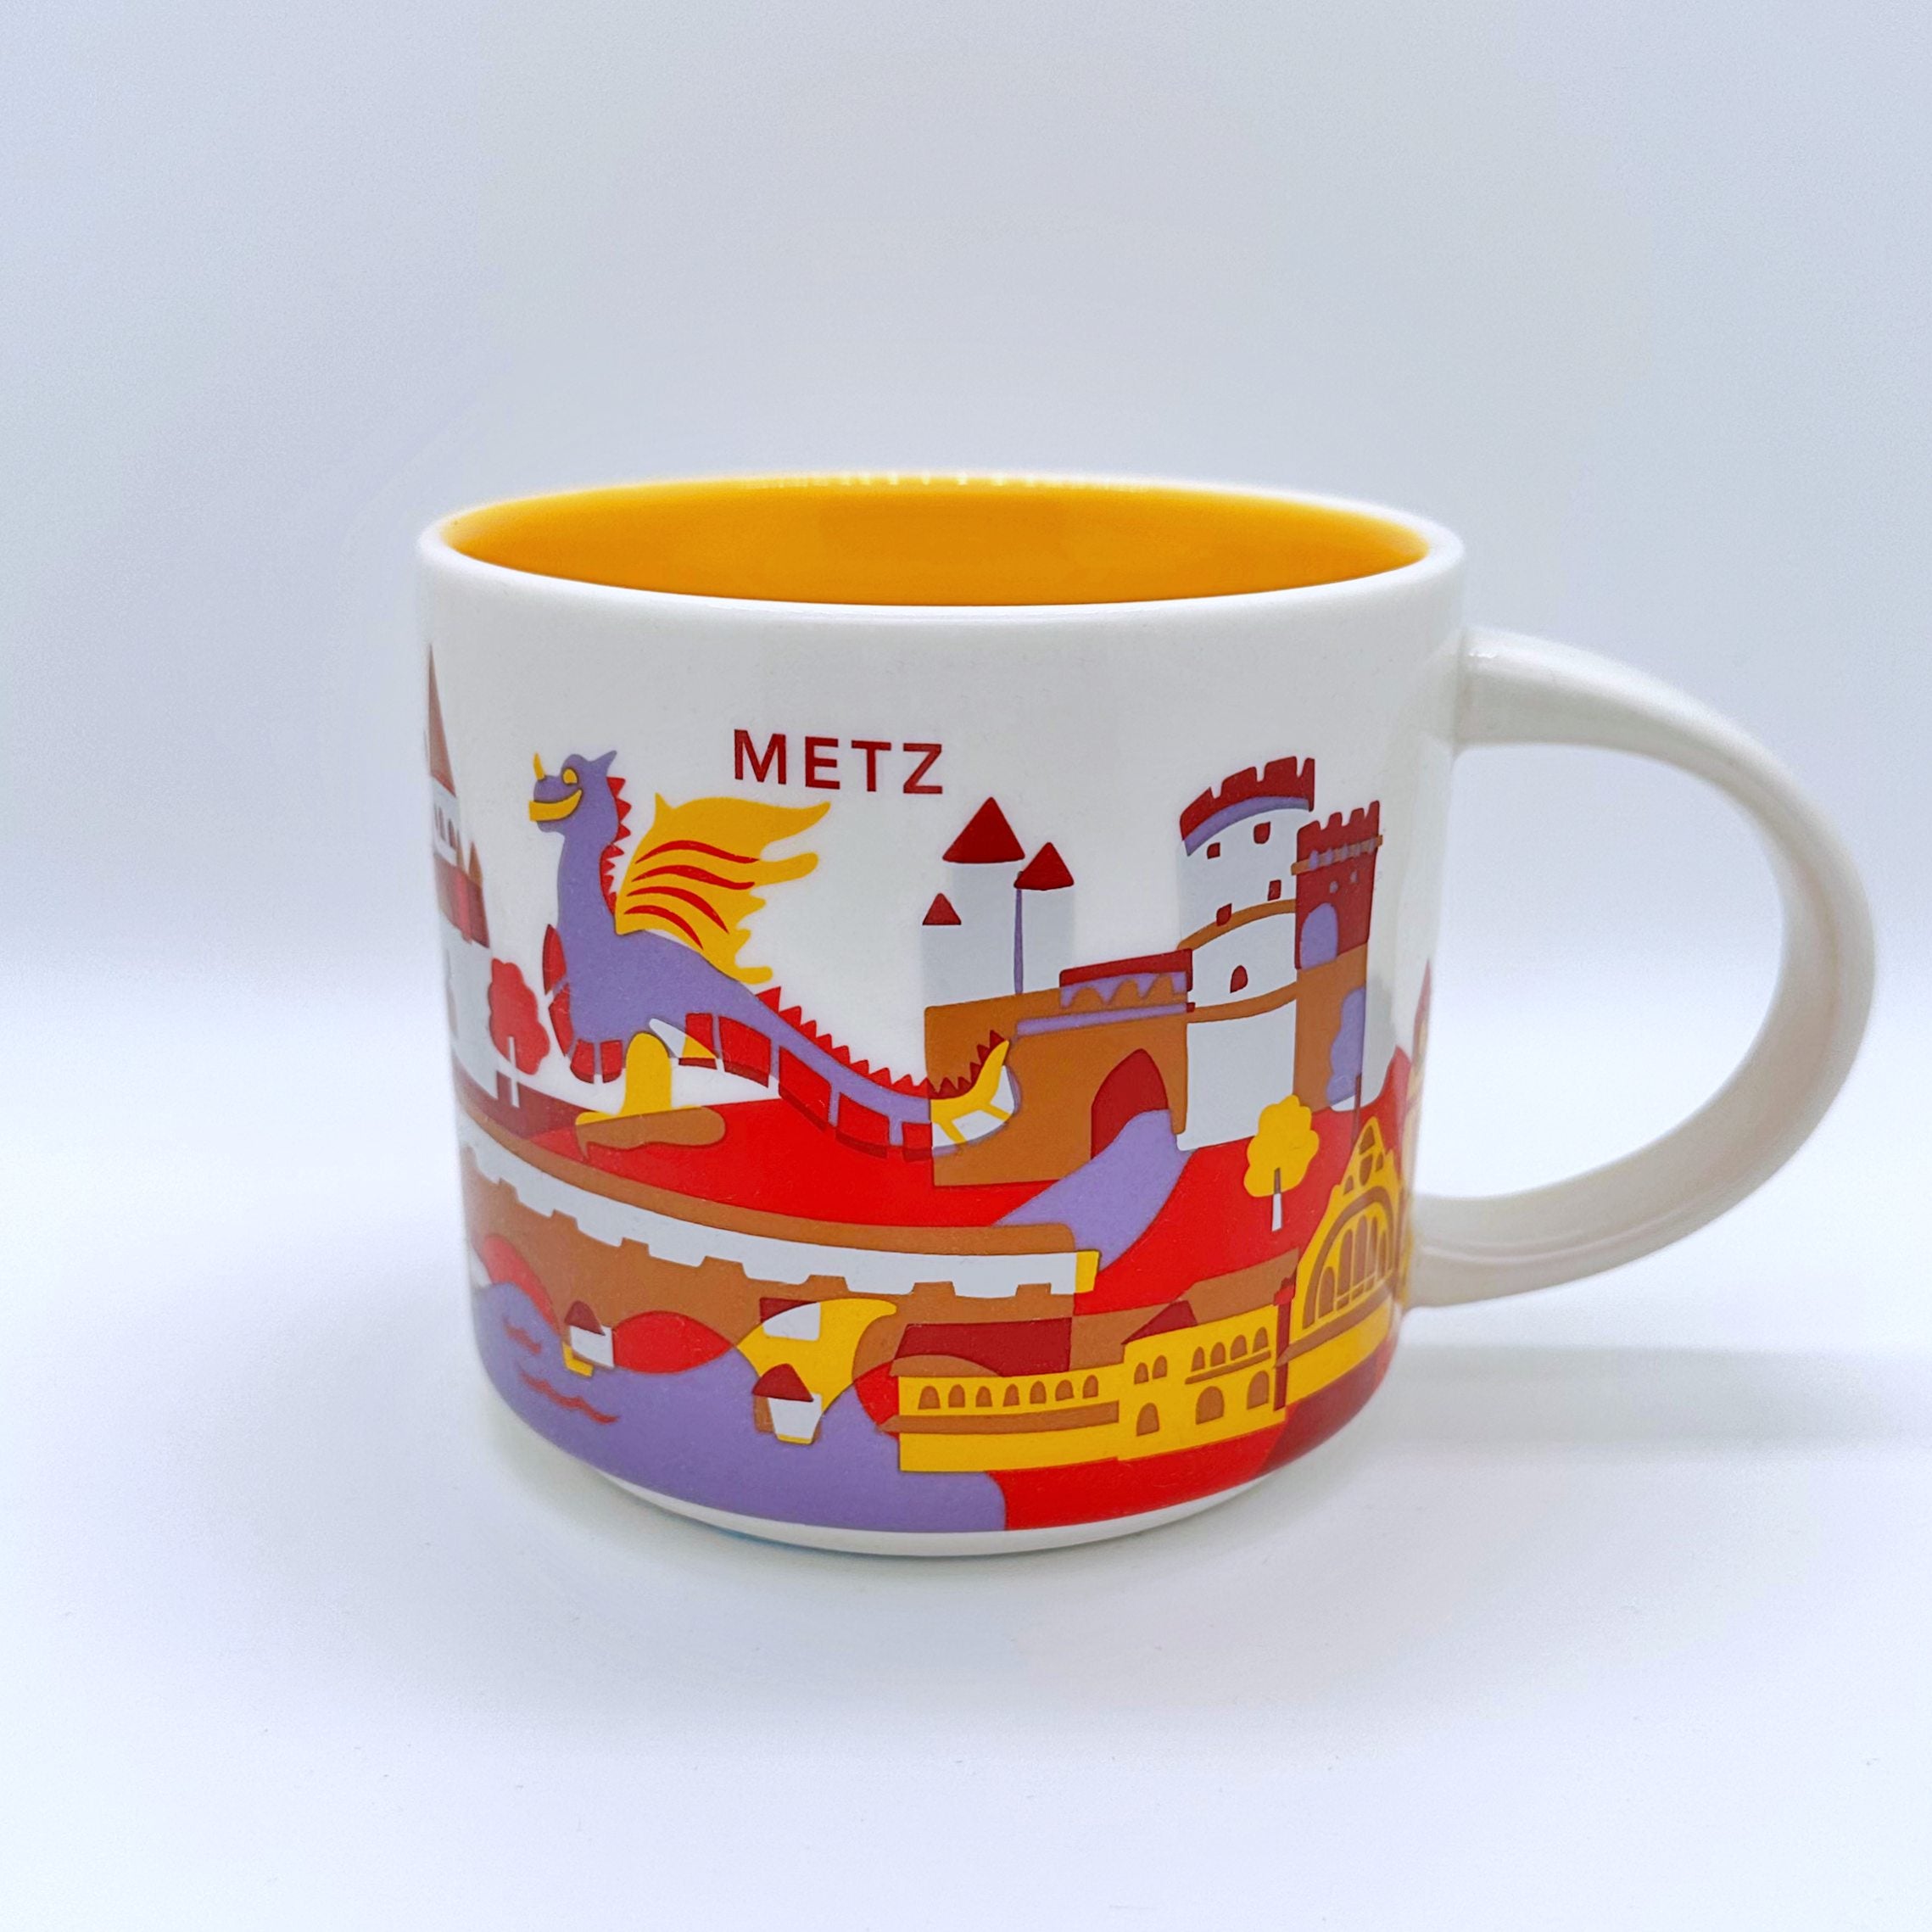 Kaffee Tee oder Cappuccino Tasse von Starbucks mit gemalten Bildern aus der Stadt Metz